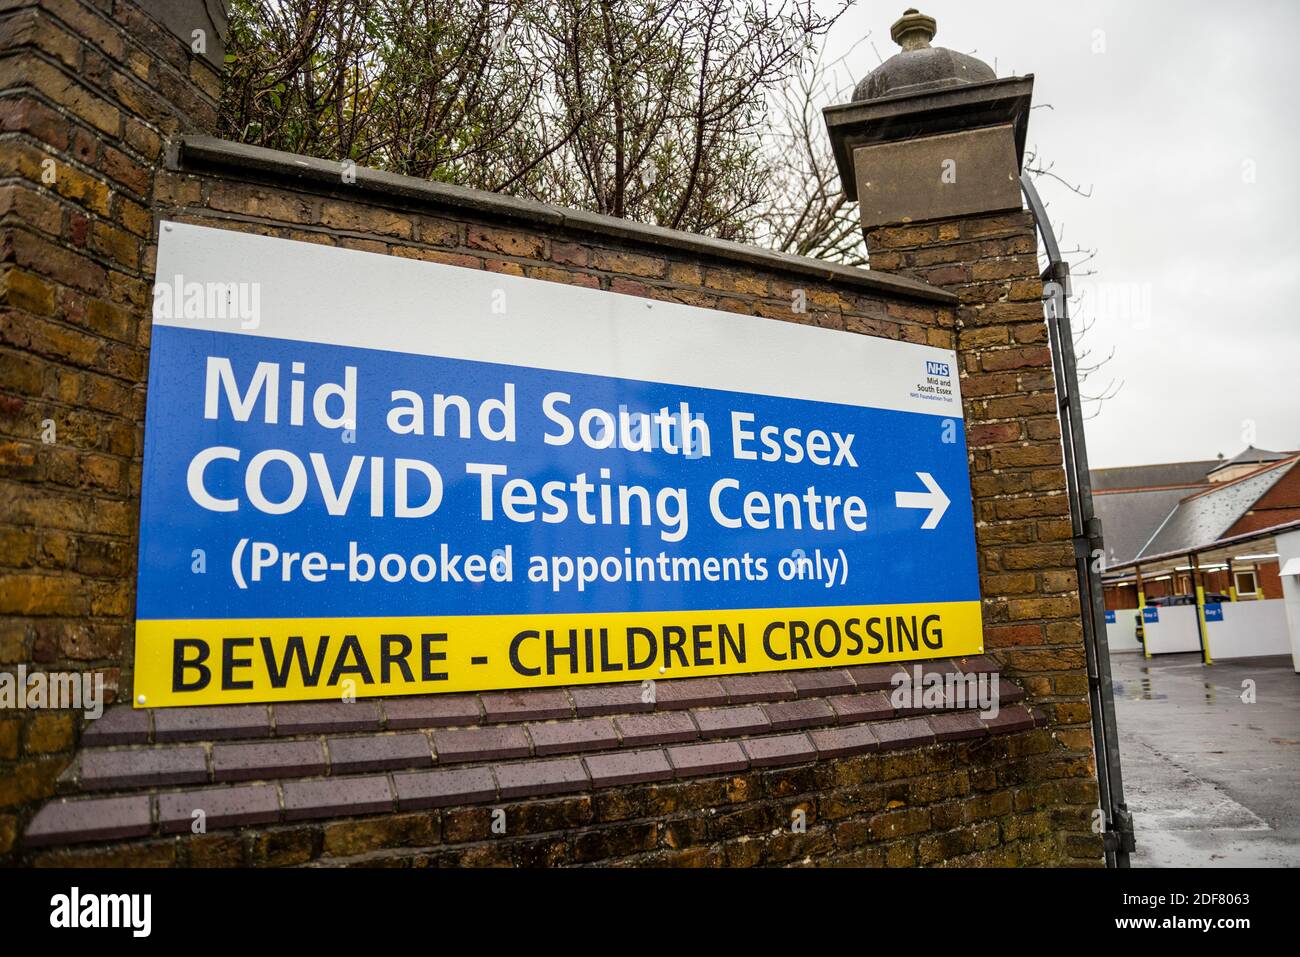 Centro di test Covid 19. Centro di test NHS Covid dell'Essex medio e sud a Southend sul mare, Essex, Regno Unito. Solo appuntamenti prenotati in anticipo, cartello. Comunità Foto Stock